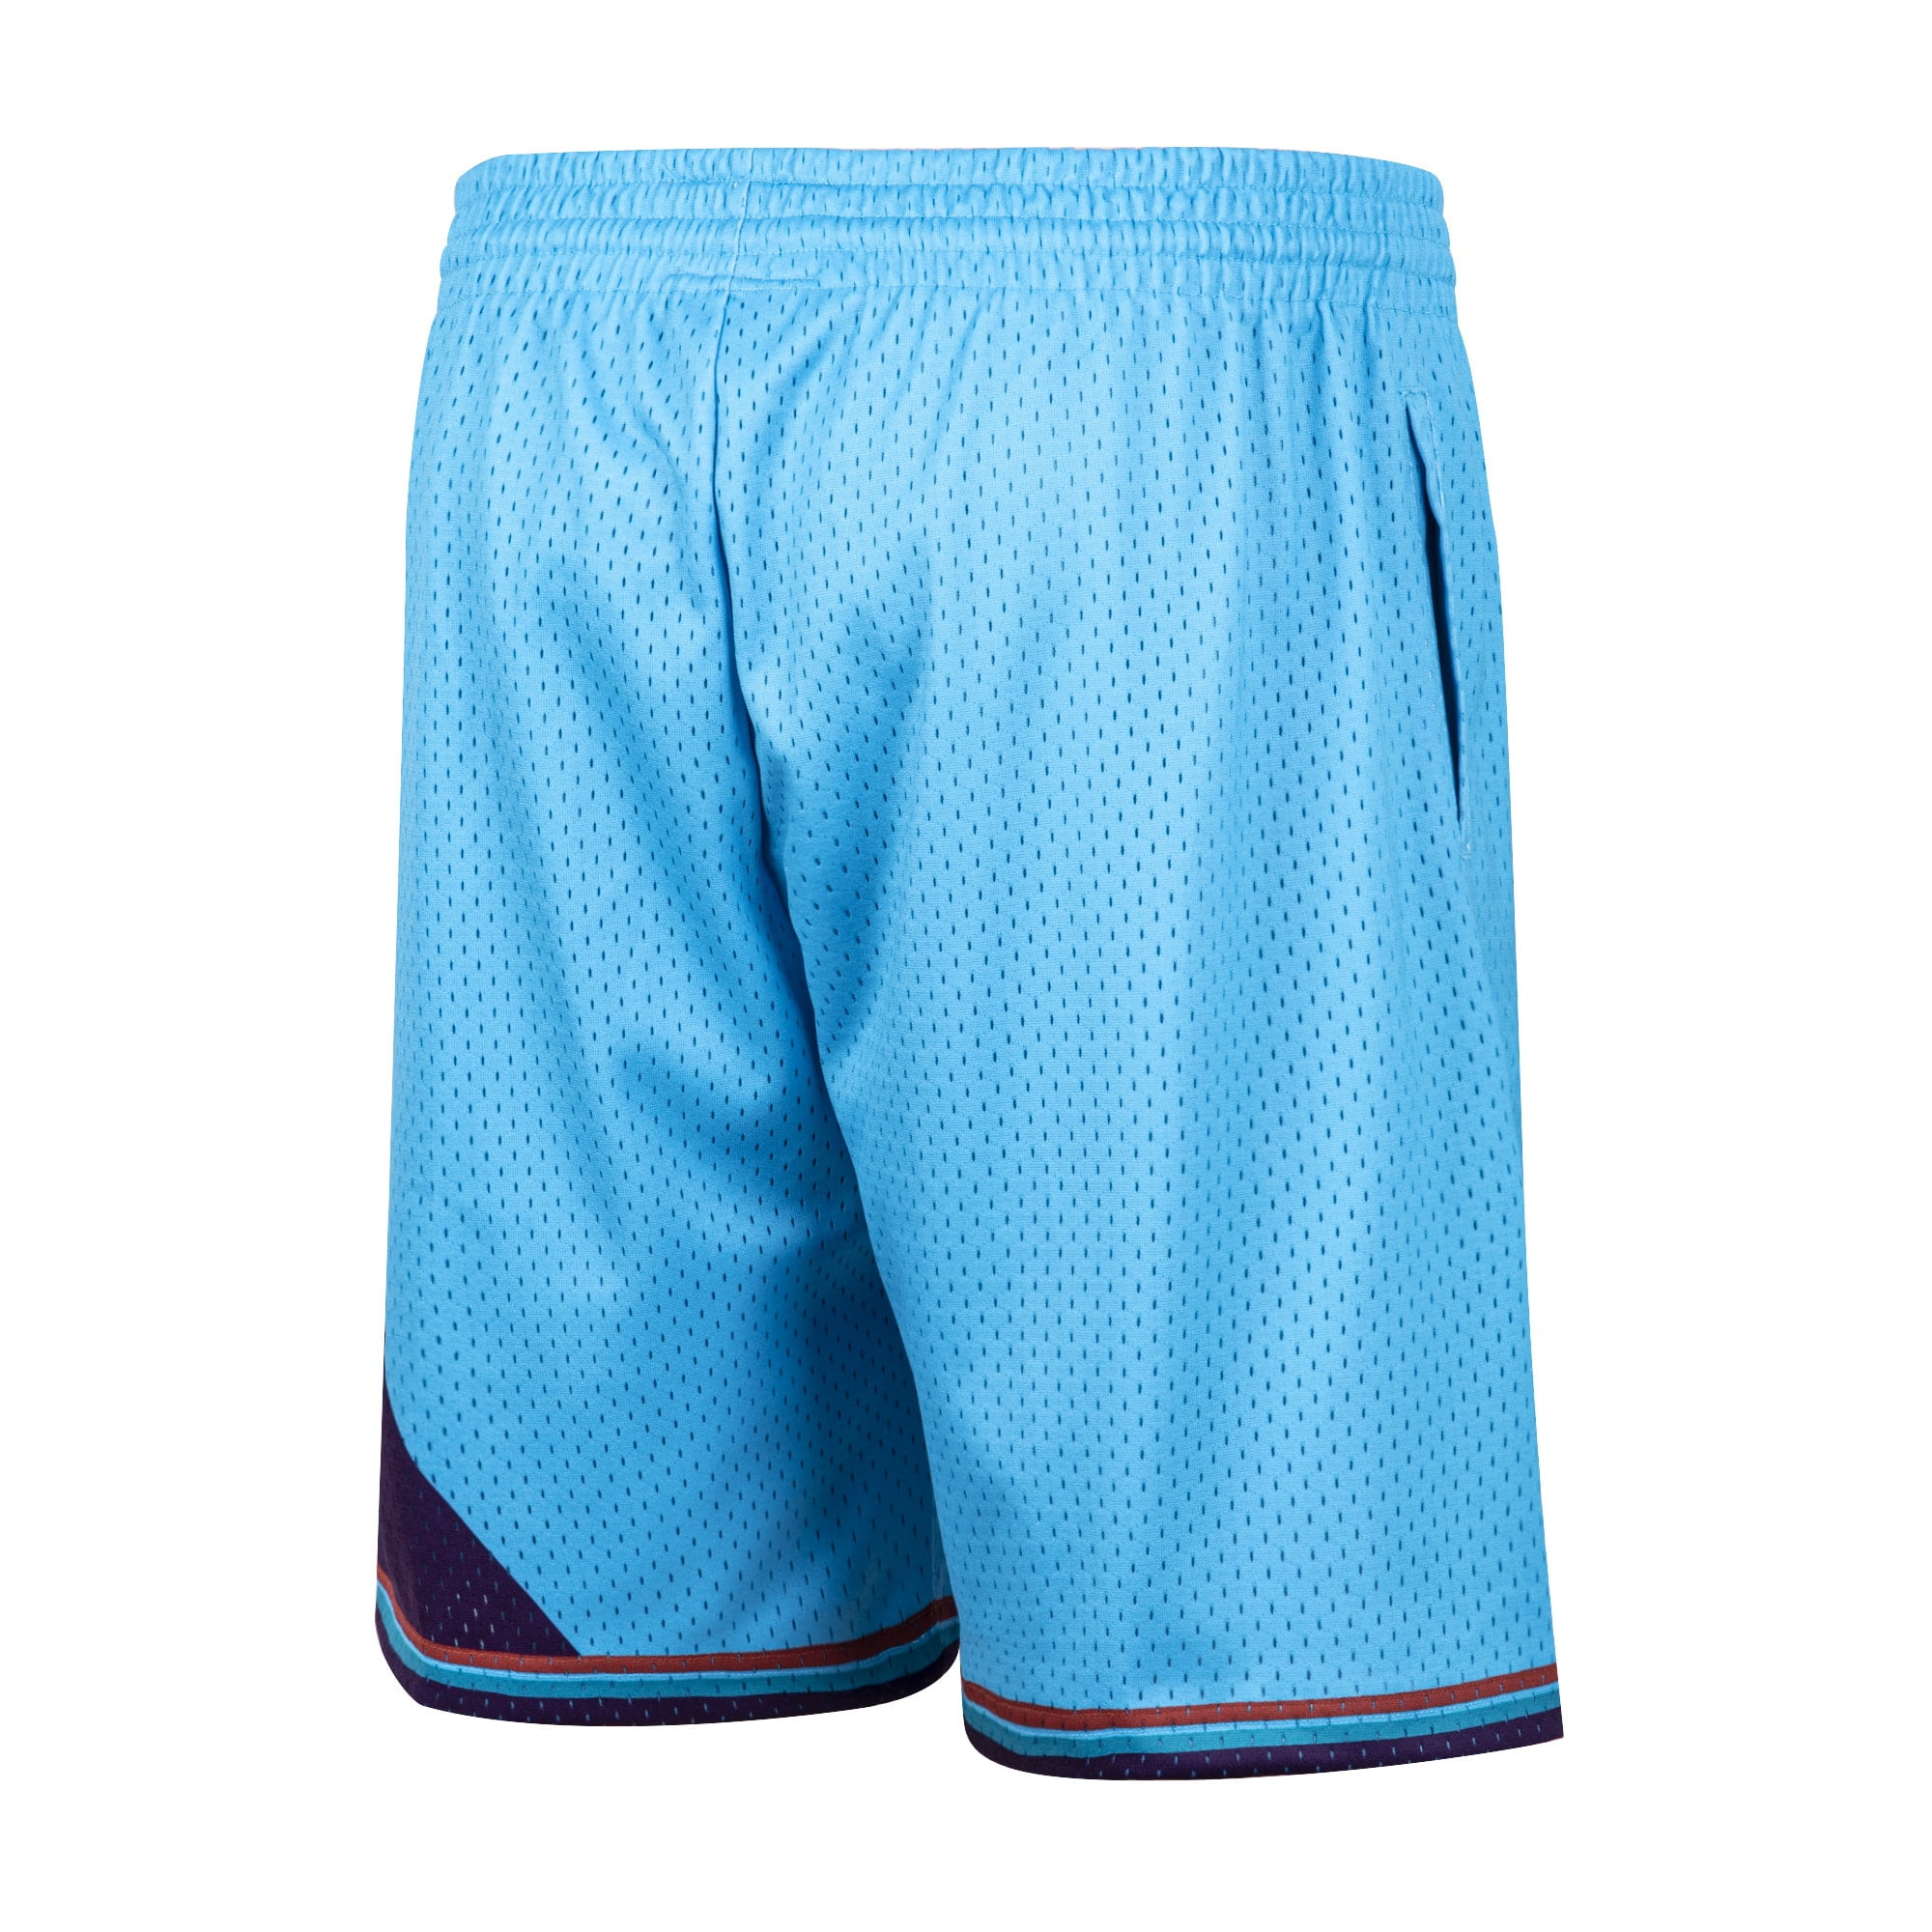 Redbat Classics Men's Blue Shorts 